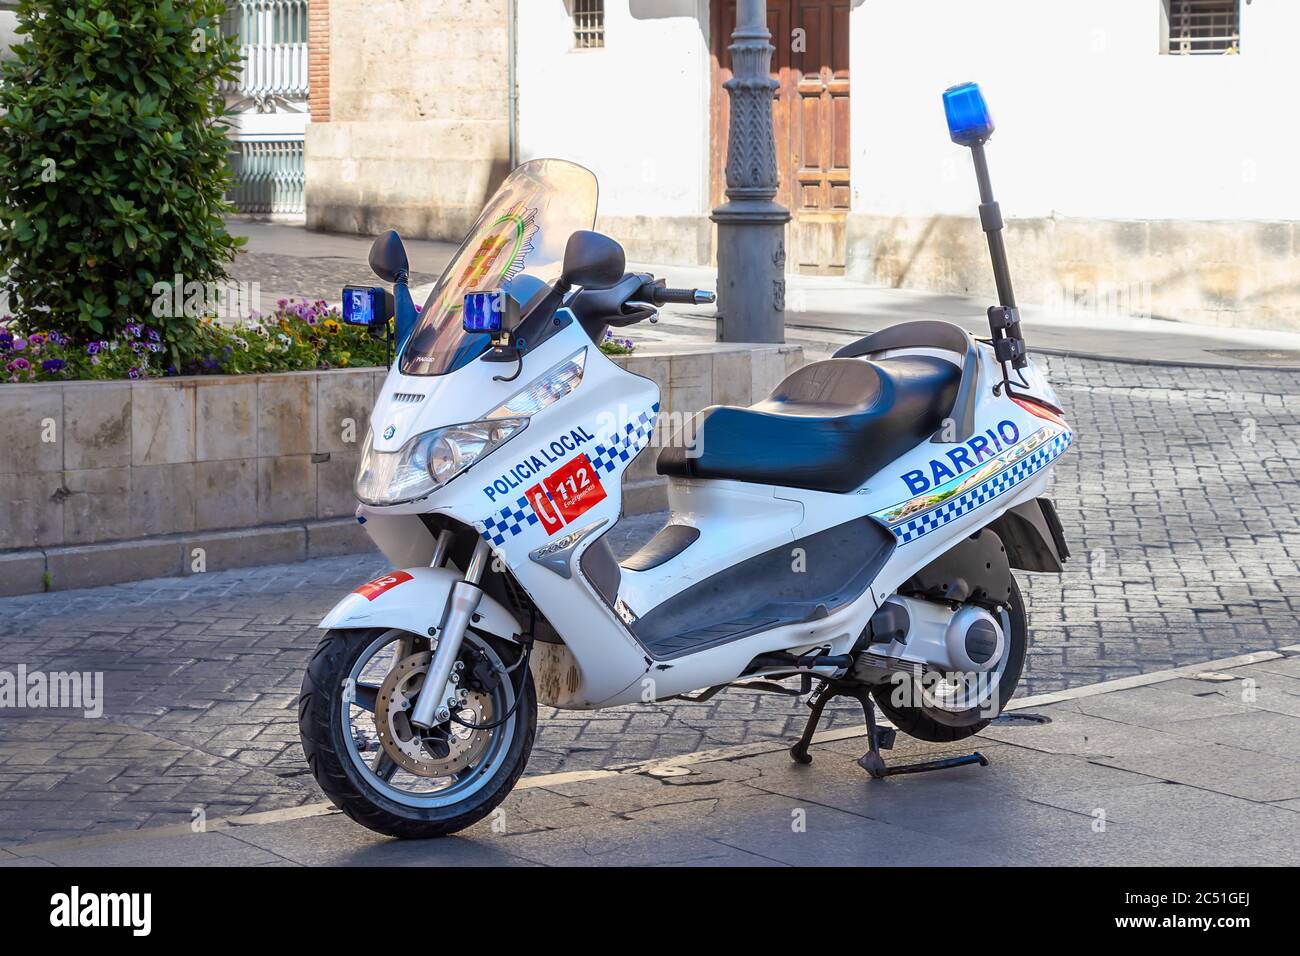 Jaen, Spanien - 18. Juni 2020: Motorrad der örtlichen Polizei in Jaen, Spanien Stockfoto